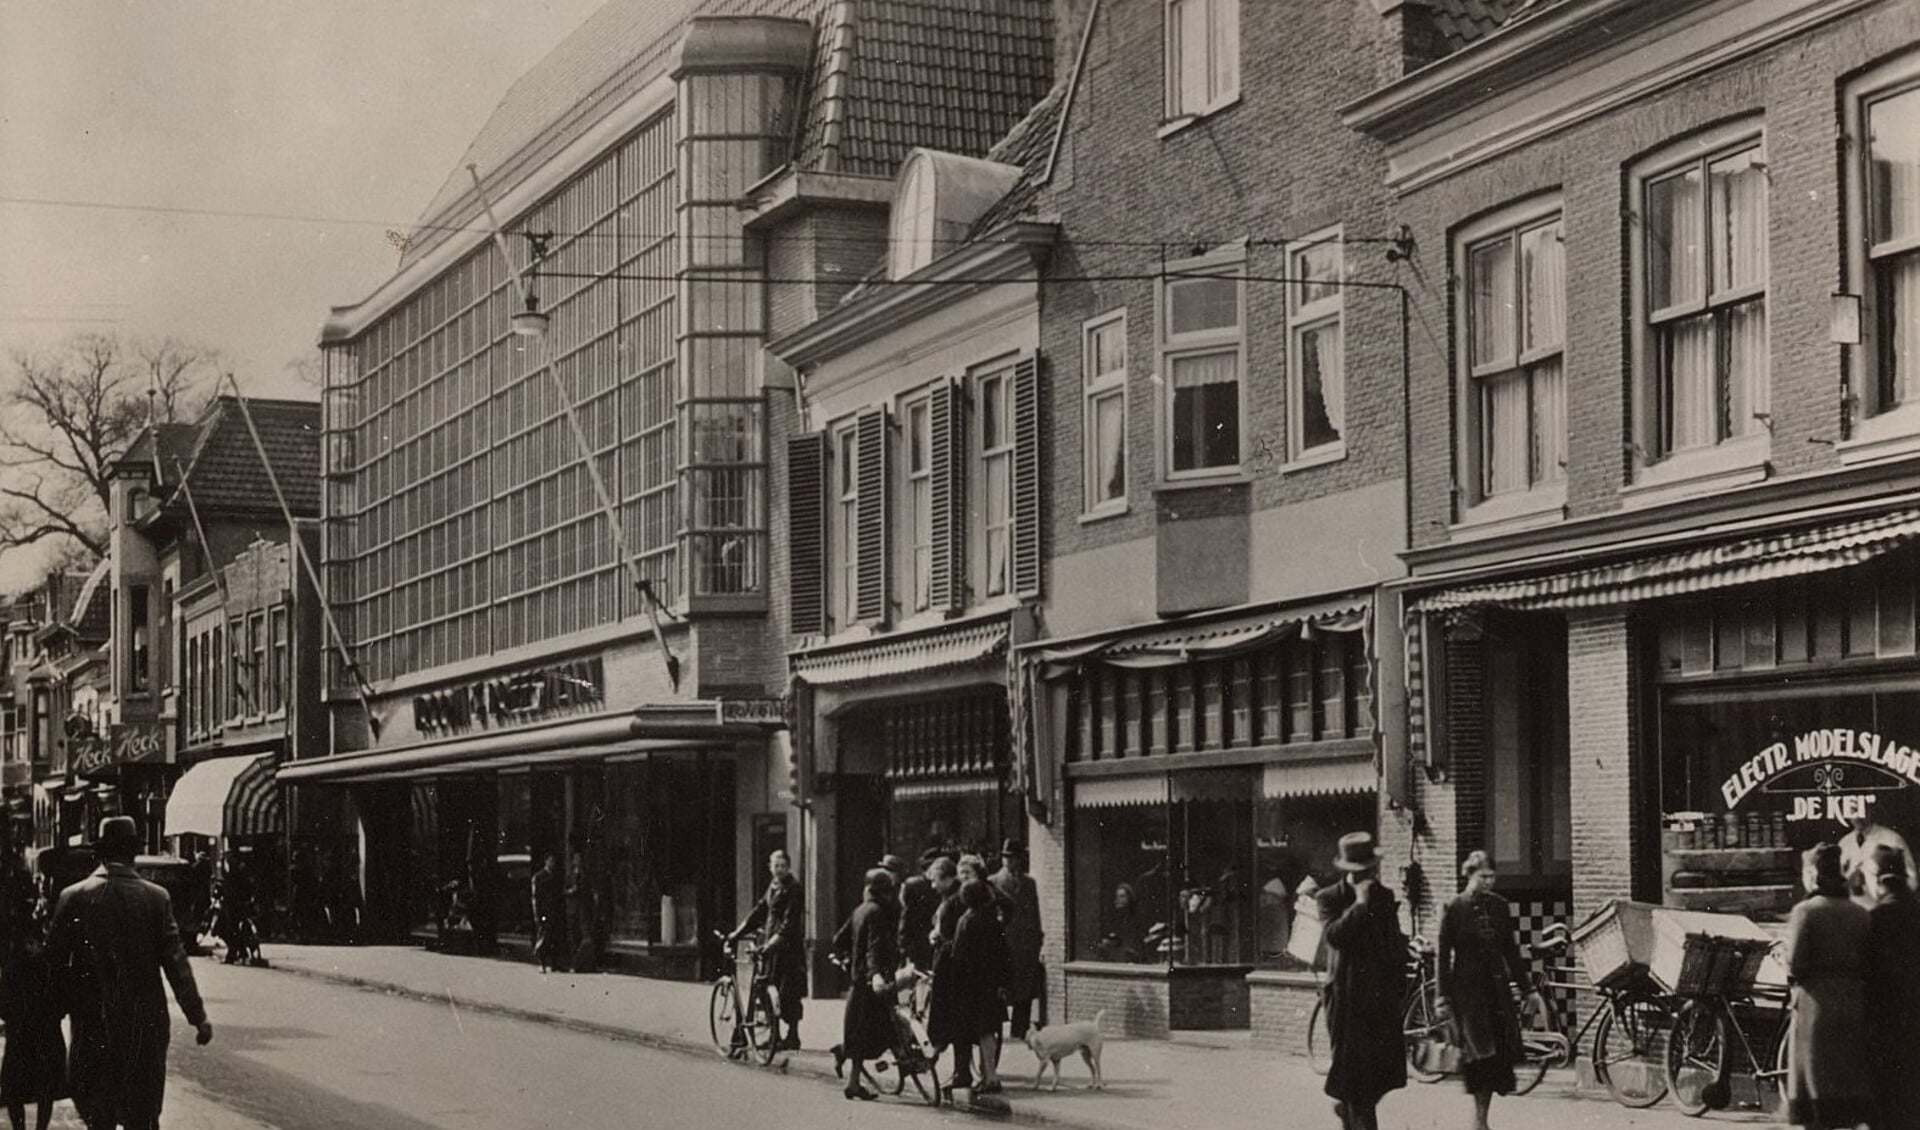 Het pand was bij de opening in 1935 het eerste grote warenhuis van Amersfoort en was destijds zeer modern met de glazen gevel. 